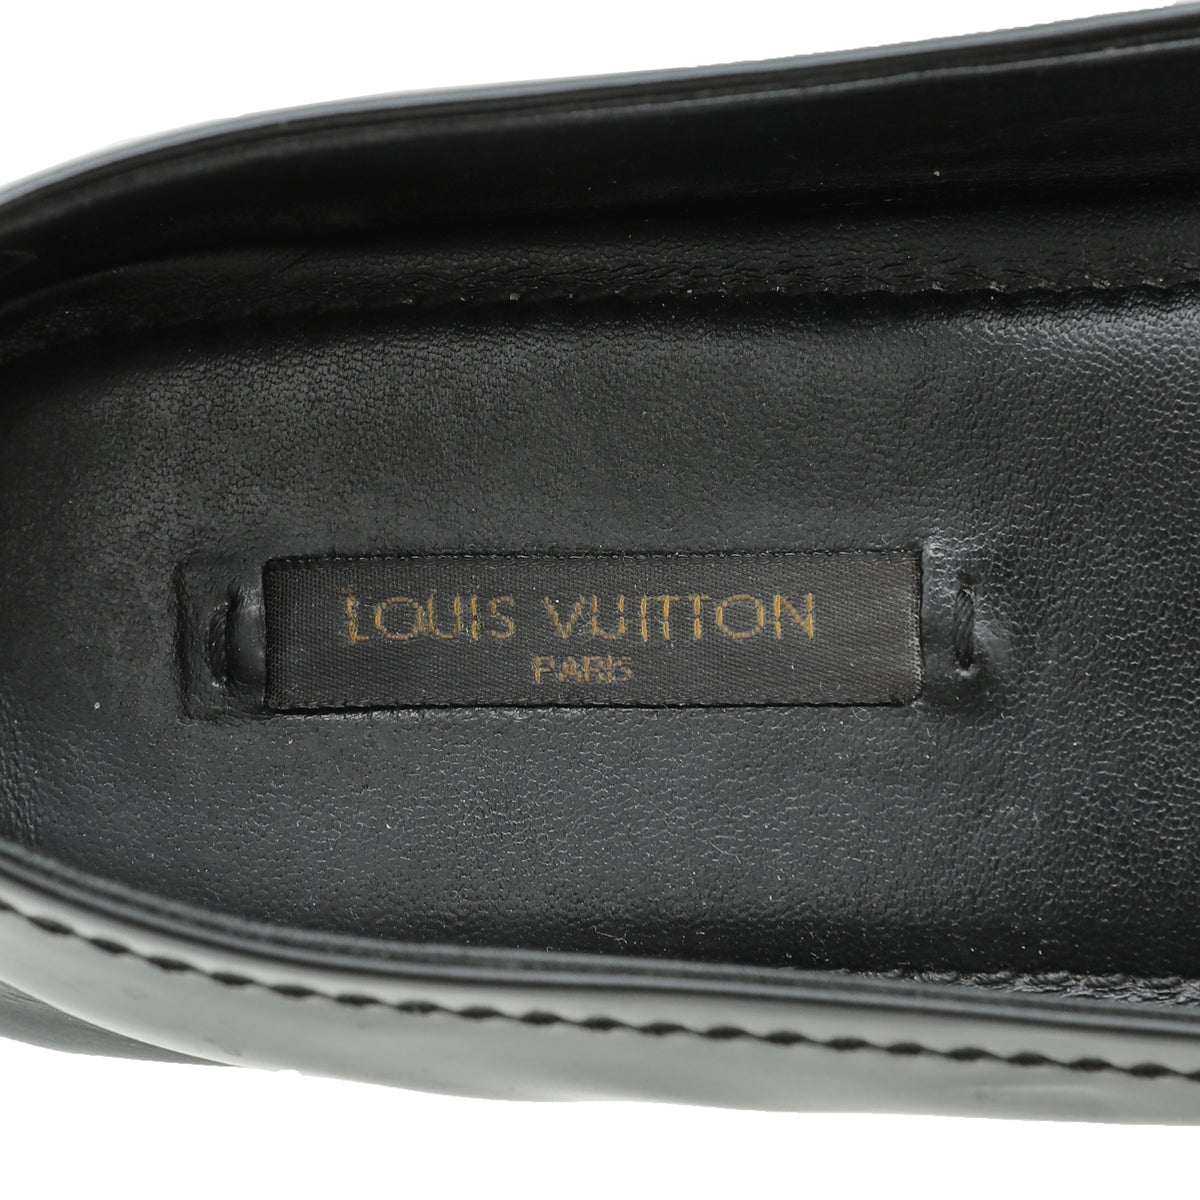 Louis Vuitton Black Oxford Ballerina Flats 37